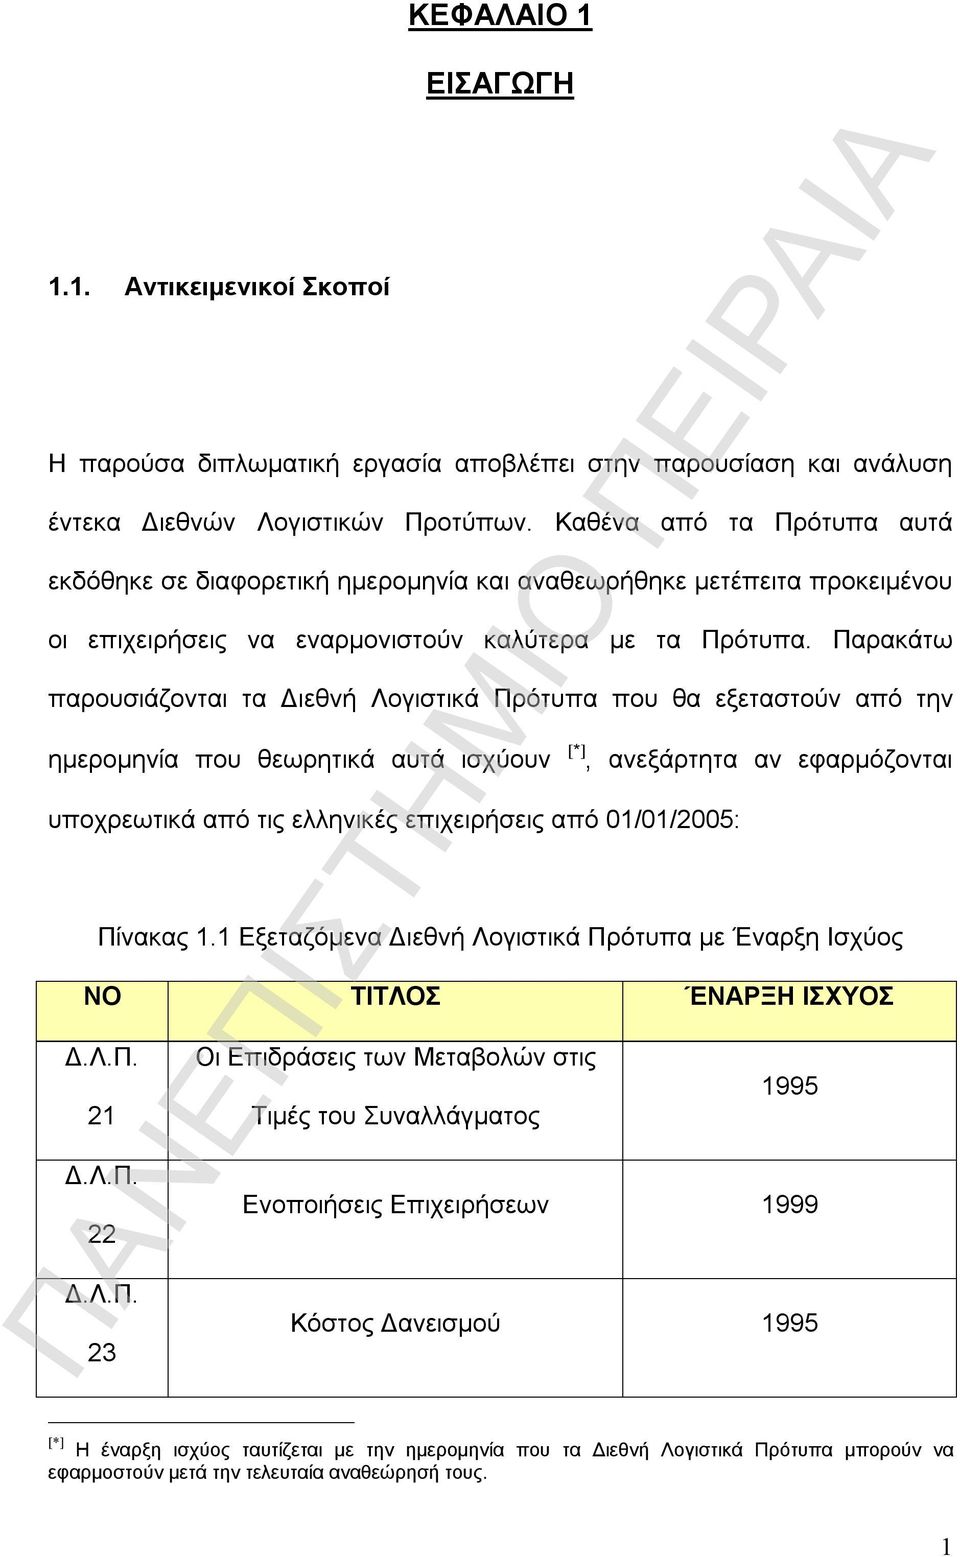 Παρακάτω παρουσιάζονται τα Διεθνή Λογιστικά Πρότυπα που θα εξεταστούν από την ημερομηνία που θεωρητικά αυτά ισχύουν [*], ανεξάρτητα αν εφαρμόζονται υποχρεωτικά από τις ελληνικές επιχειρήσεις από